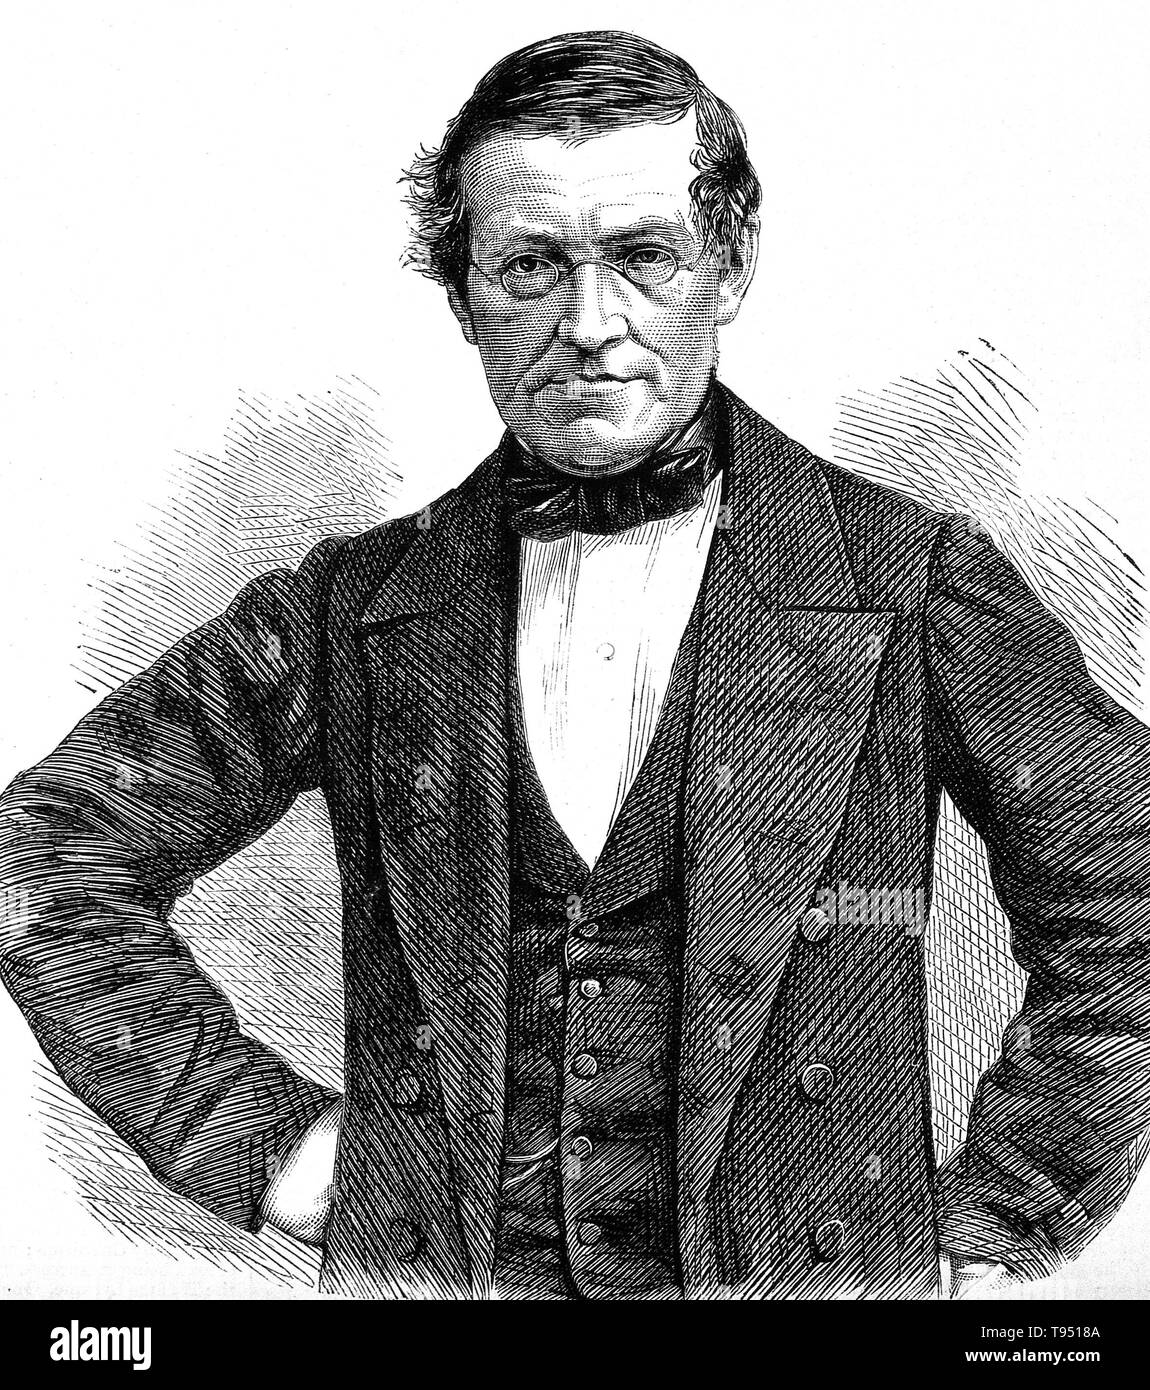 Sir Charles Wheatstone, incisione su legno. Charles Wheatstone (1802-1875) è stato uno scienziato inglese e inventore di molte scoperte scientifiche dell'epoca vittoriana, compresa la concertina inglese, stereoscopio (un dispositivo per la visualizzazione di immagini tridimensionali), e il Playfair cipher (una tecnica di crittografia). Tuttavia, Wheatstone è più noto per i suoi contributi nello sviluppo del ponte di Wheatstone, originariamente inventato da Samuel Hunter Christie, che è utilizzato per misurare una sconosciuta resistenza elettrica, e come una figura importante nello sviluppo della telegrafia. Foto Stock